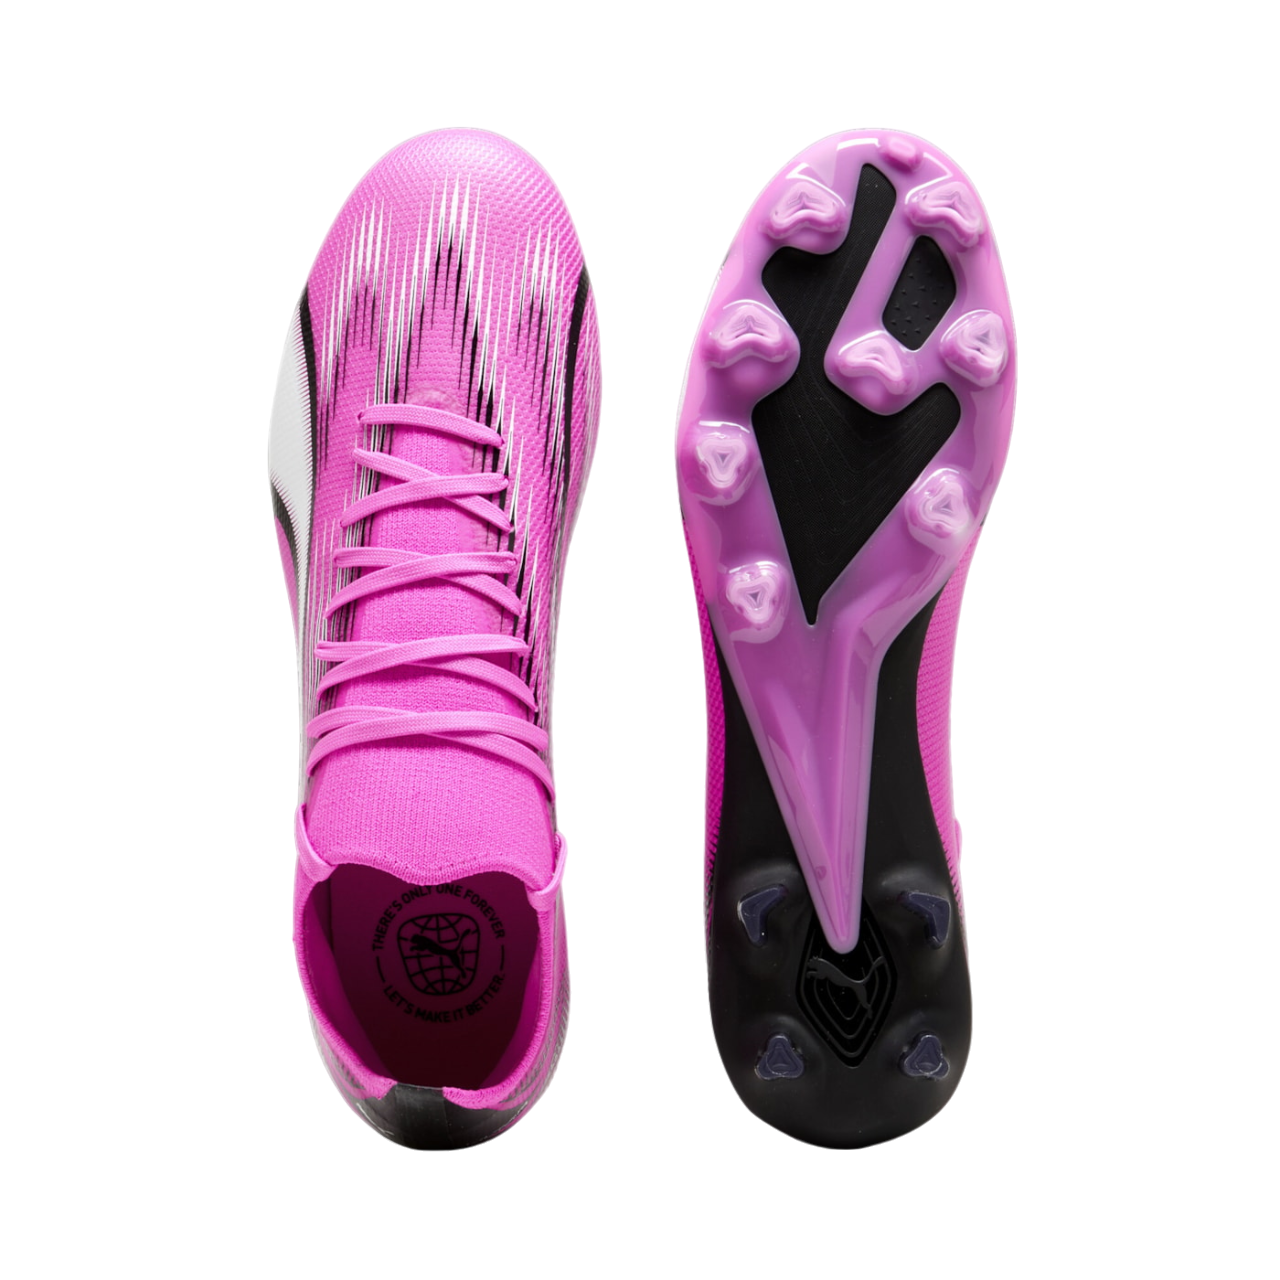 Puma men&#39;s football boot Ultra Match FG/AG 107754-01 poison pink